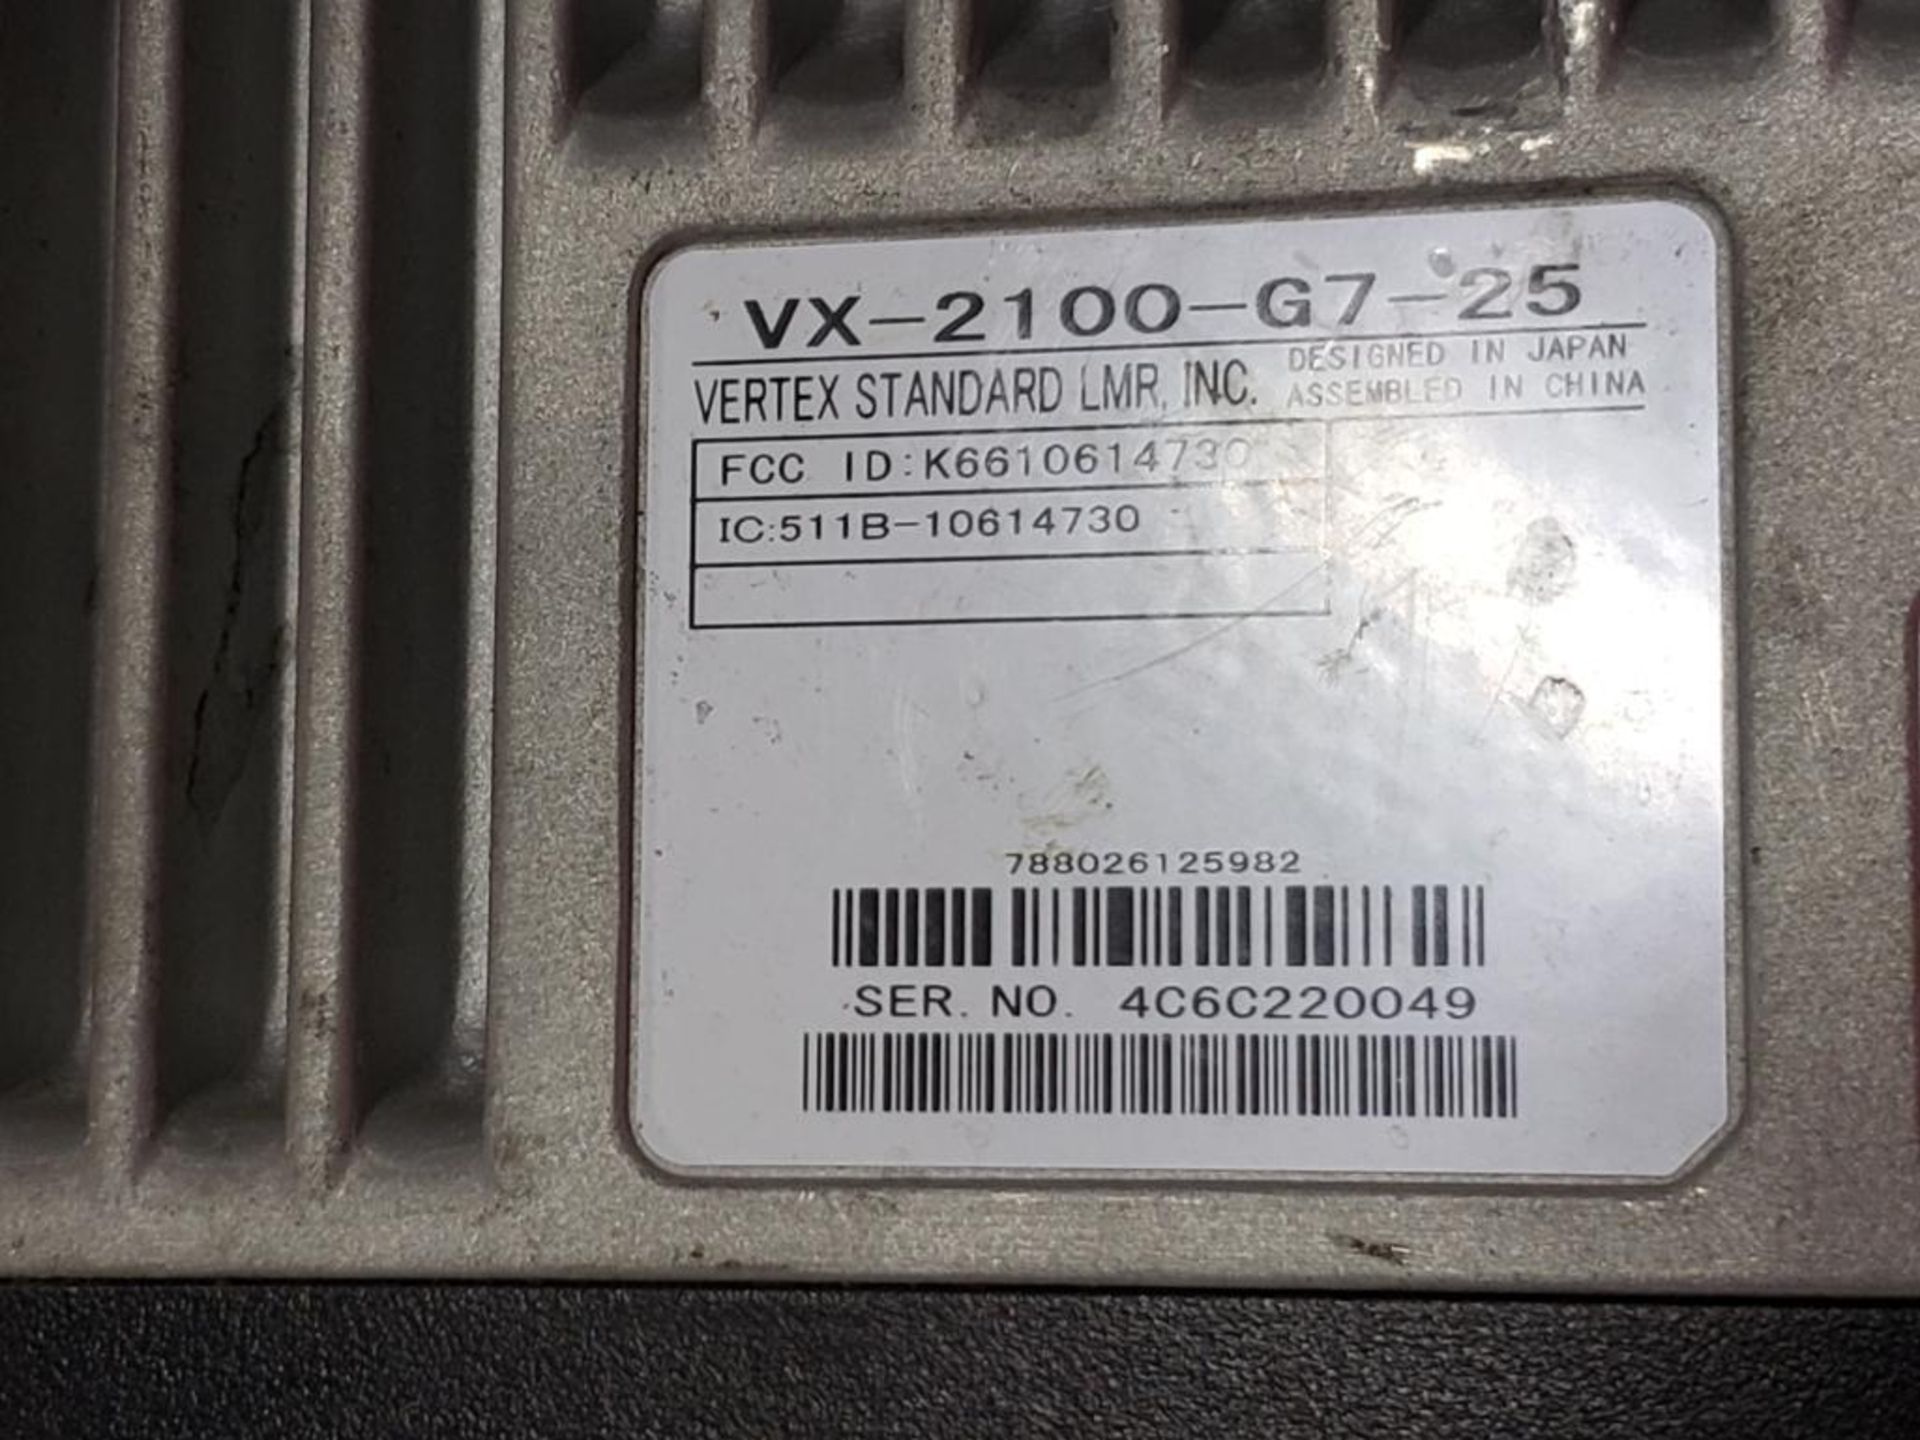 Vertex VX-2100-G7-25 2-way radio. - Image 2 of 2